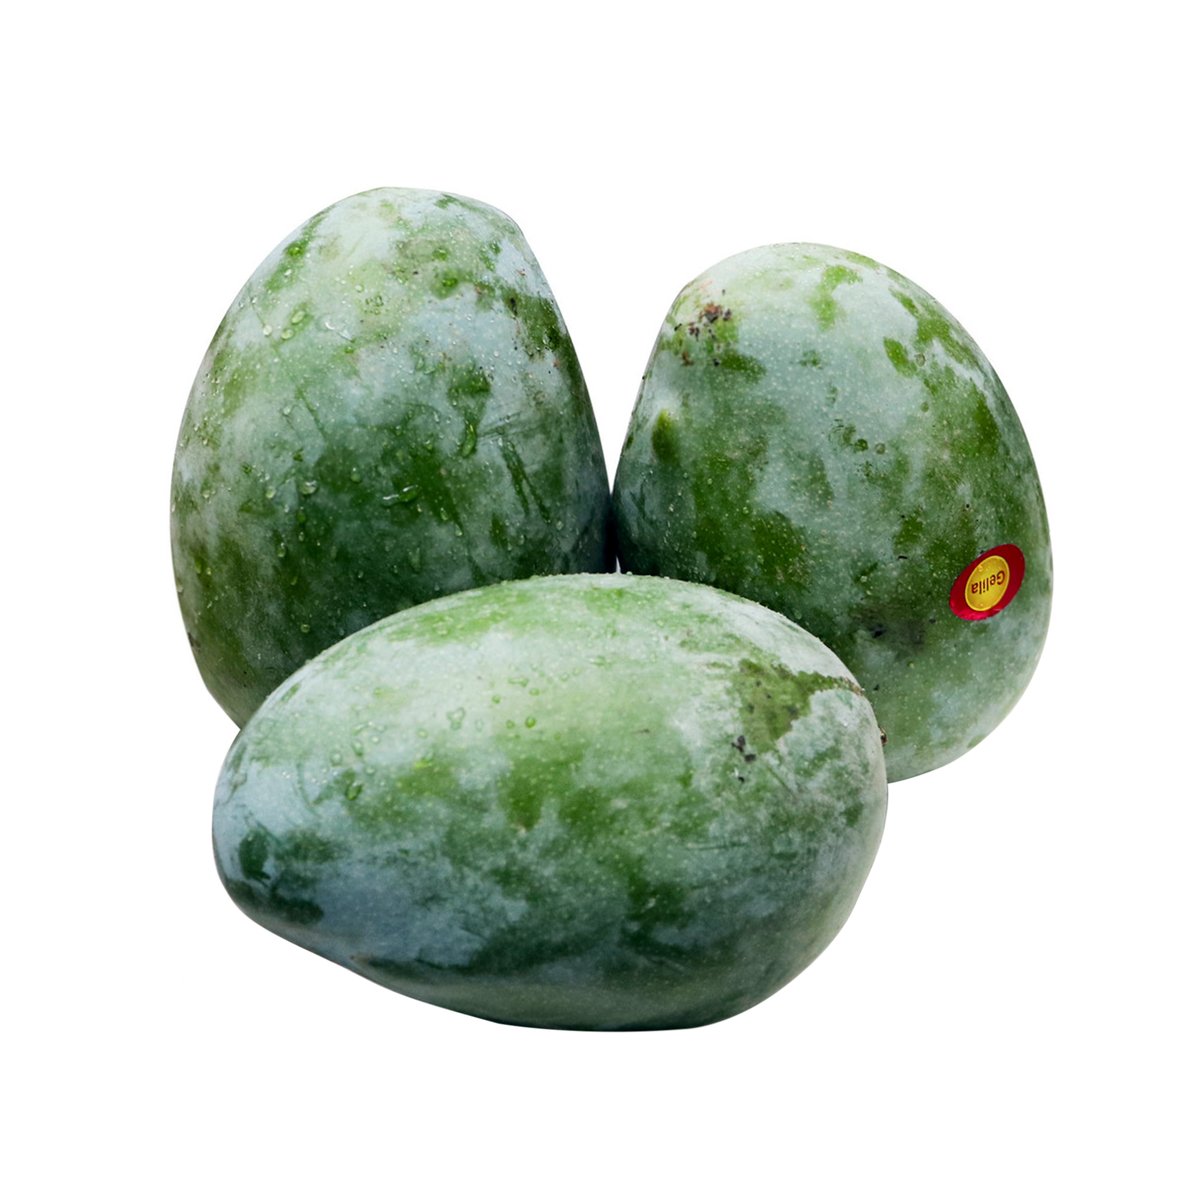 Buy Mango Keit 1 kg Online at Best Price | Mangoes | Lulu KSA in Saudi Arabia